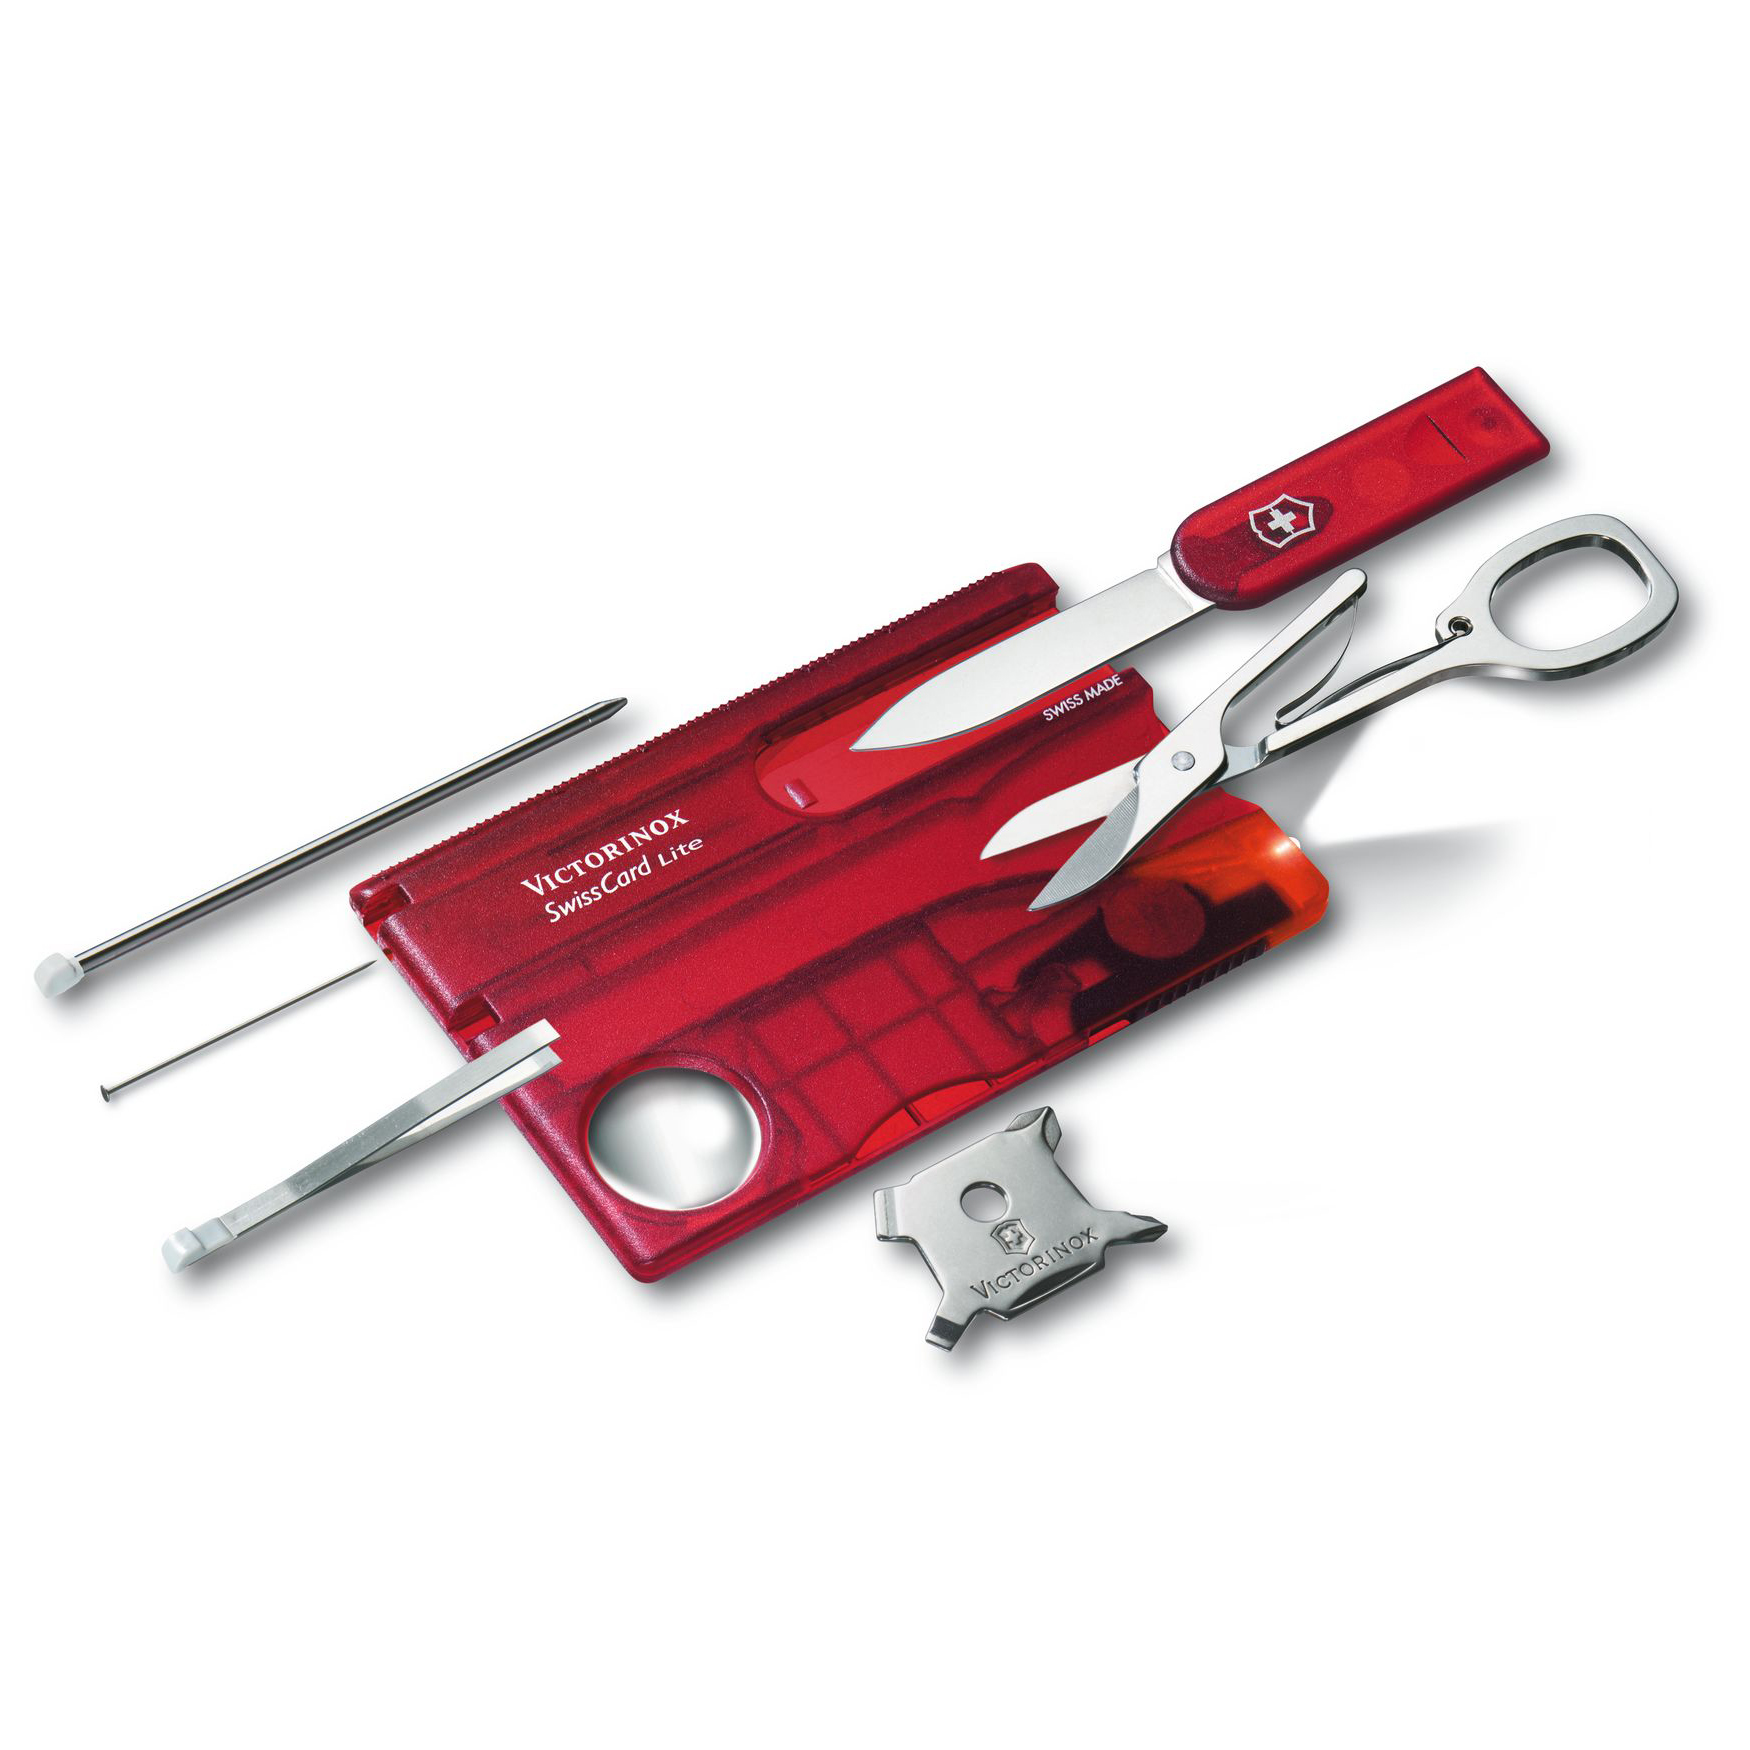 Швейцарская карта Victorinox SwissCard Lite, сталь X50CrMoV15, рукоять ABS-пластик, полупрозрачный красный - фото 4